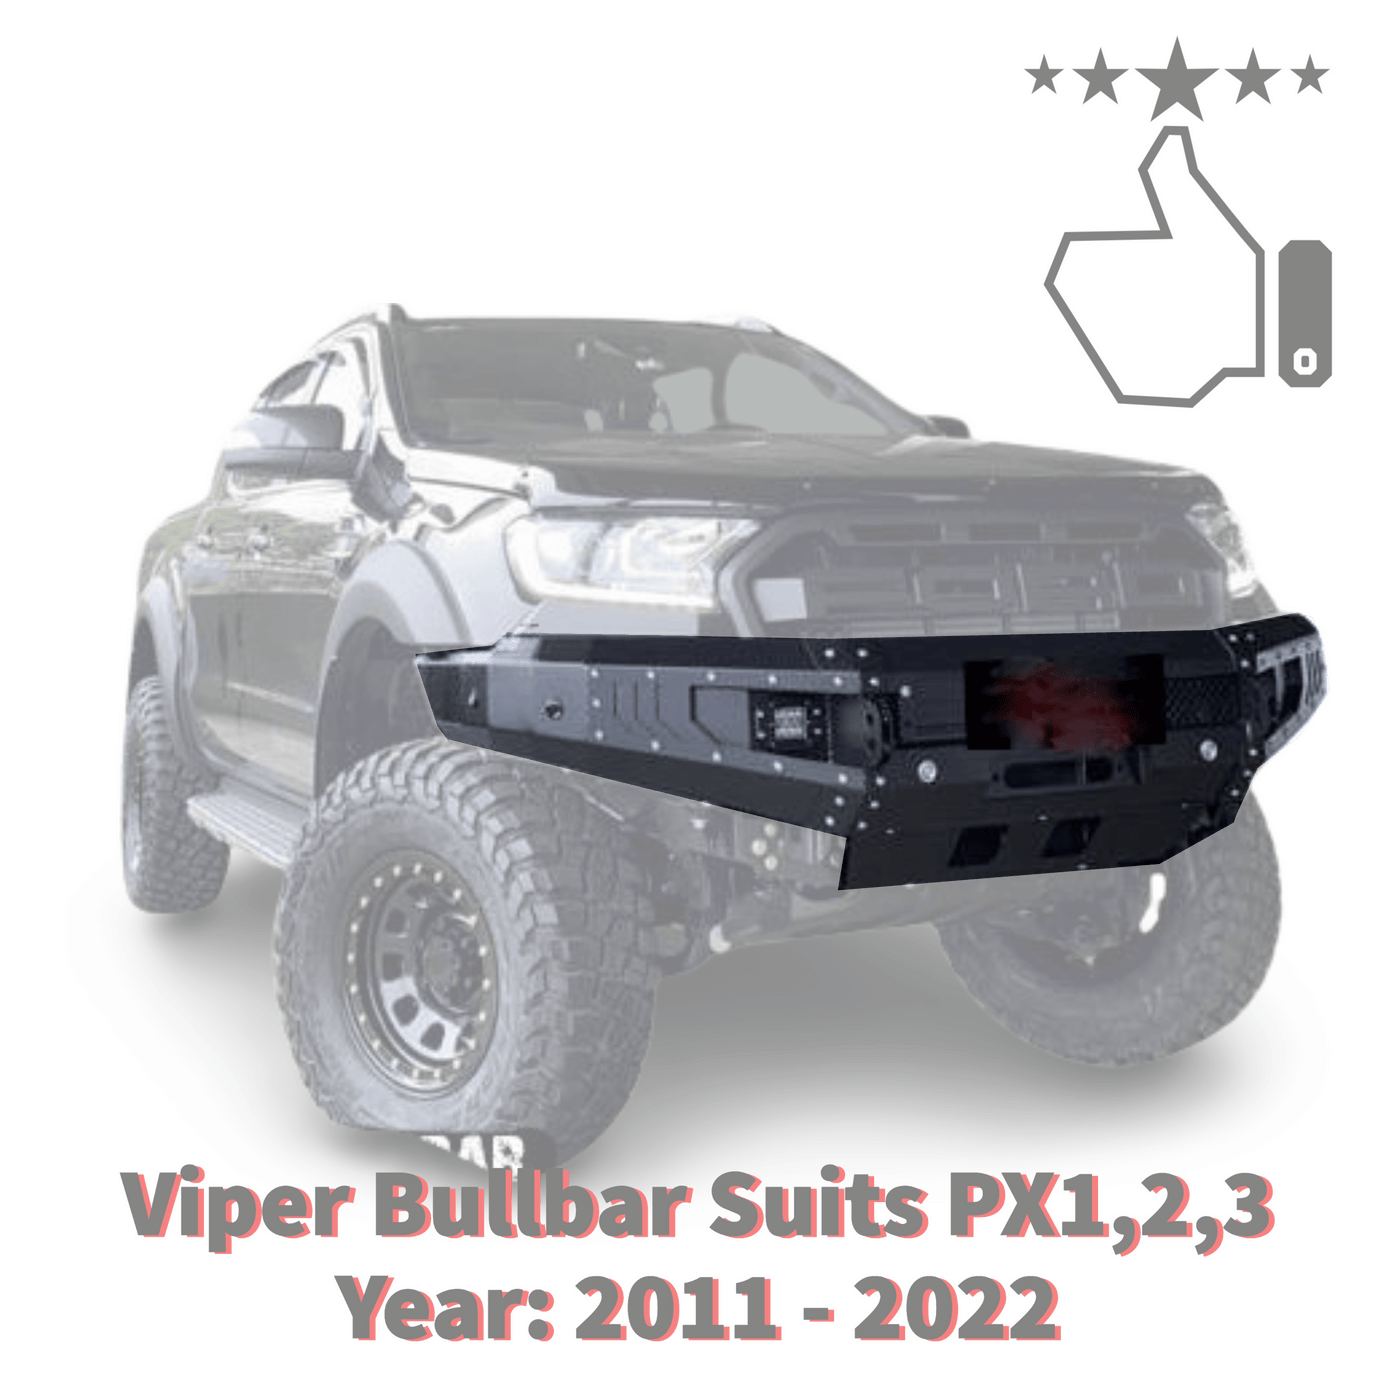 Viper Bullbar Suits Ford Ranger Fits PX1,2,3 2011 - 2022 - OZI4X4 PTY LTD